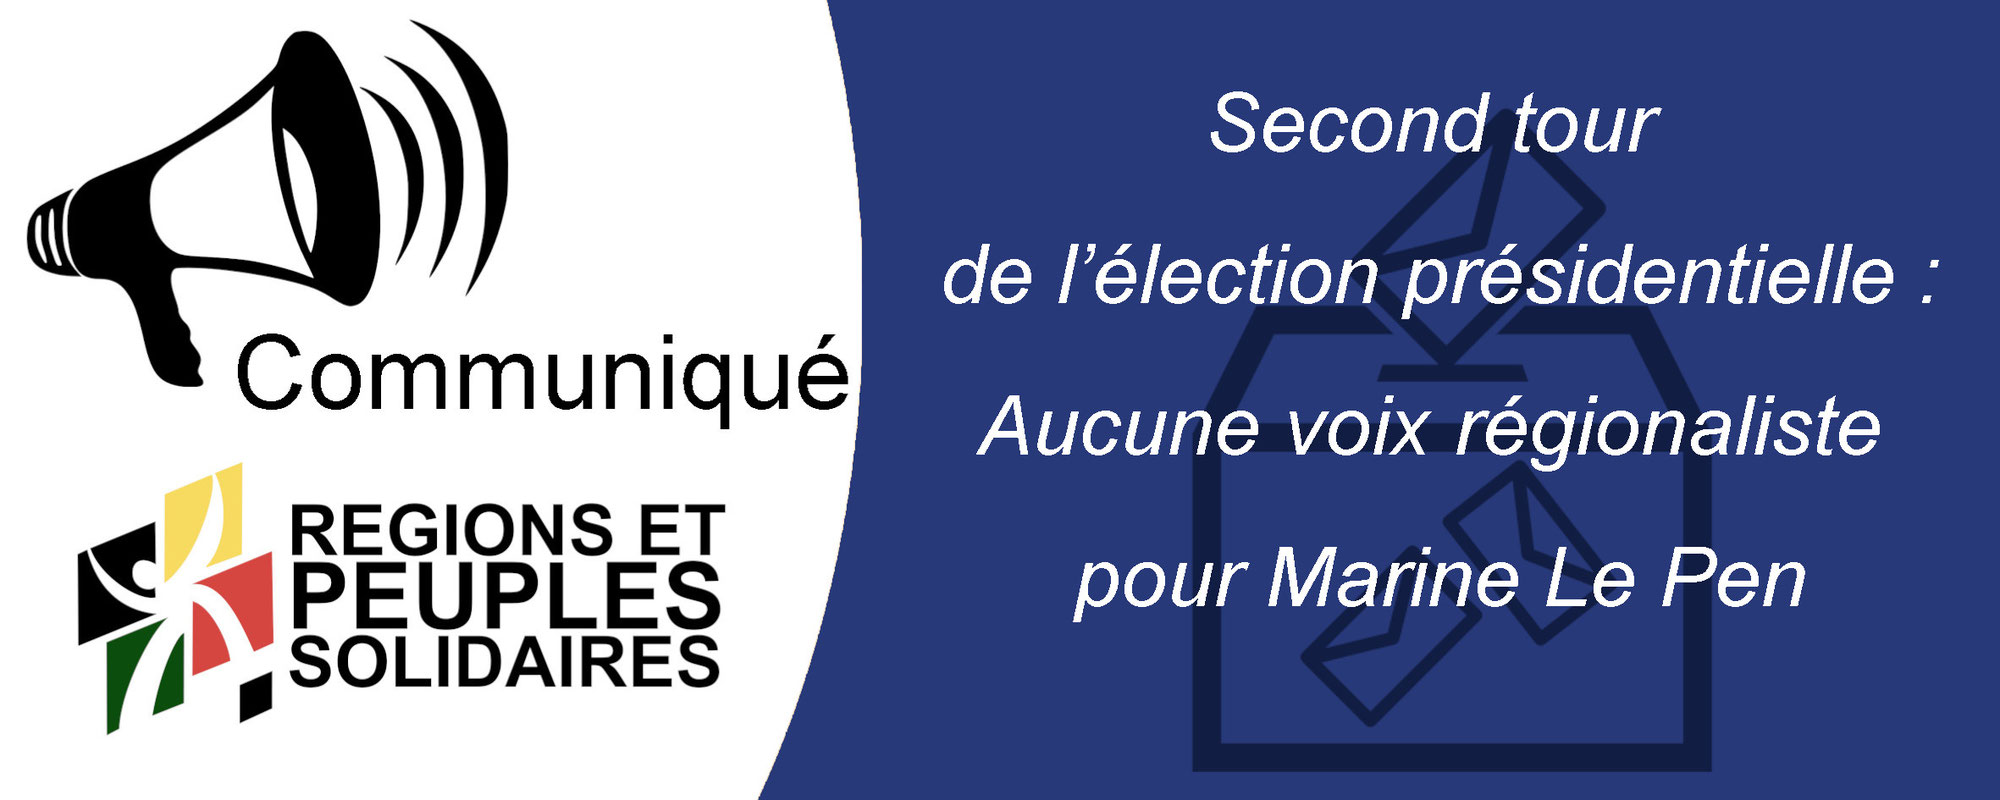 Second tour de l’élection présidentielle :  Aucune voix régionaliste pour Marine Le Pen